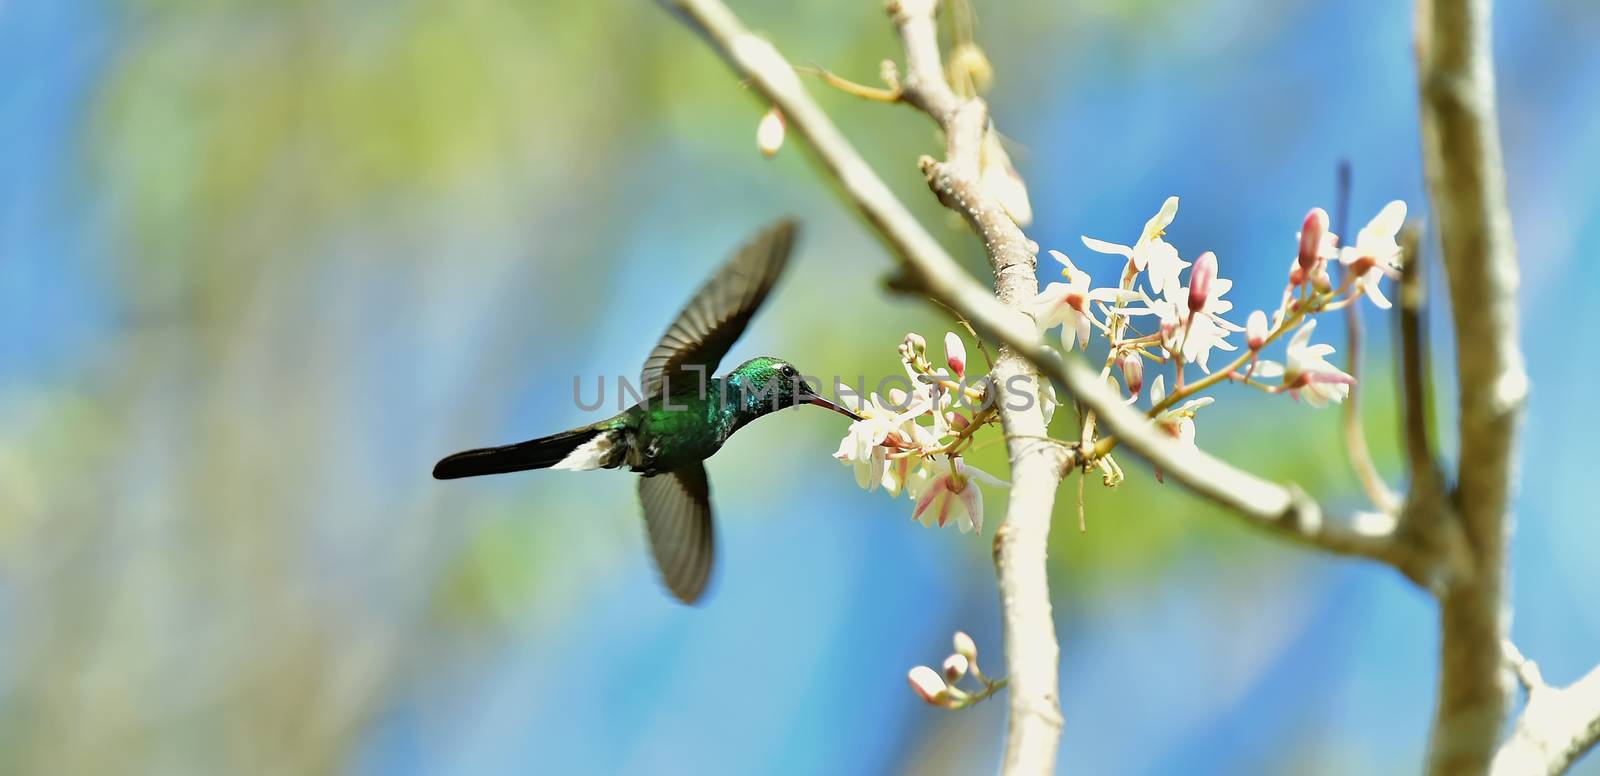 Flying Cuban Emerald Hummingbird (Chlorostilbon ricordii) by SURZ